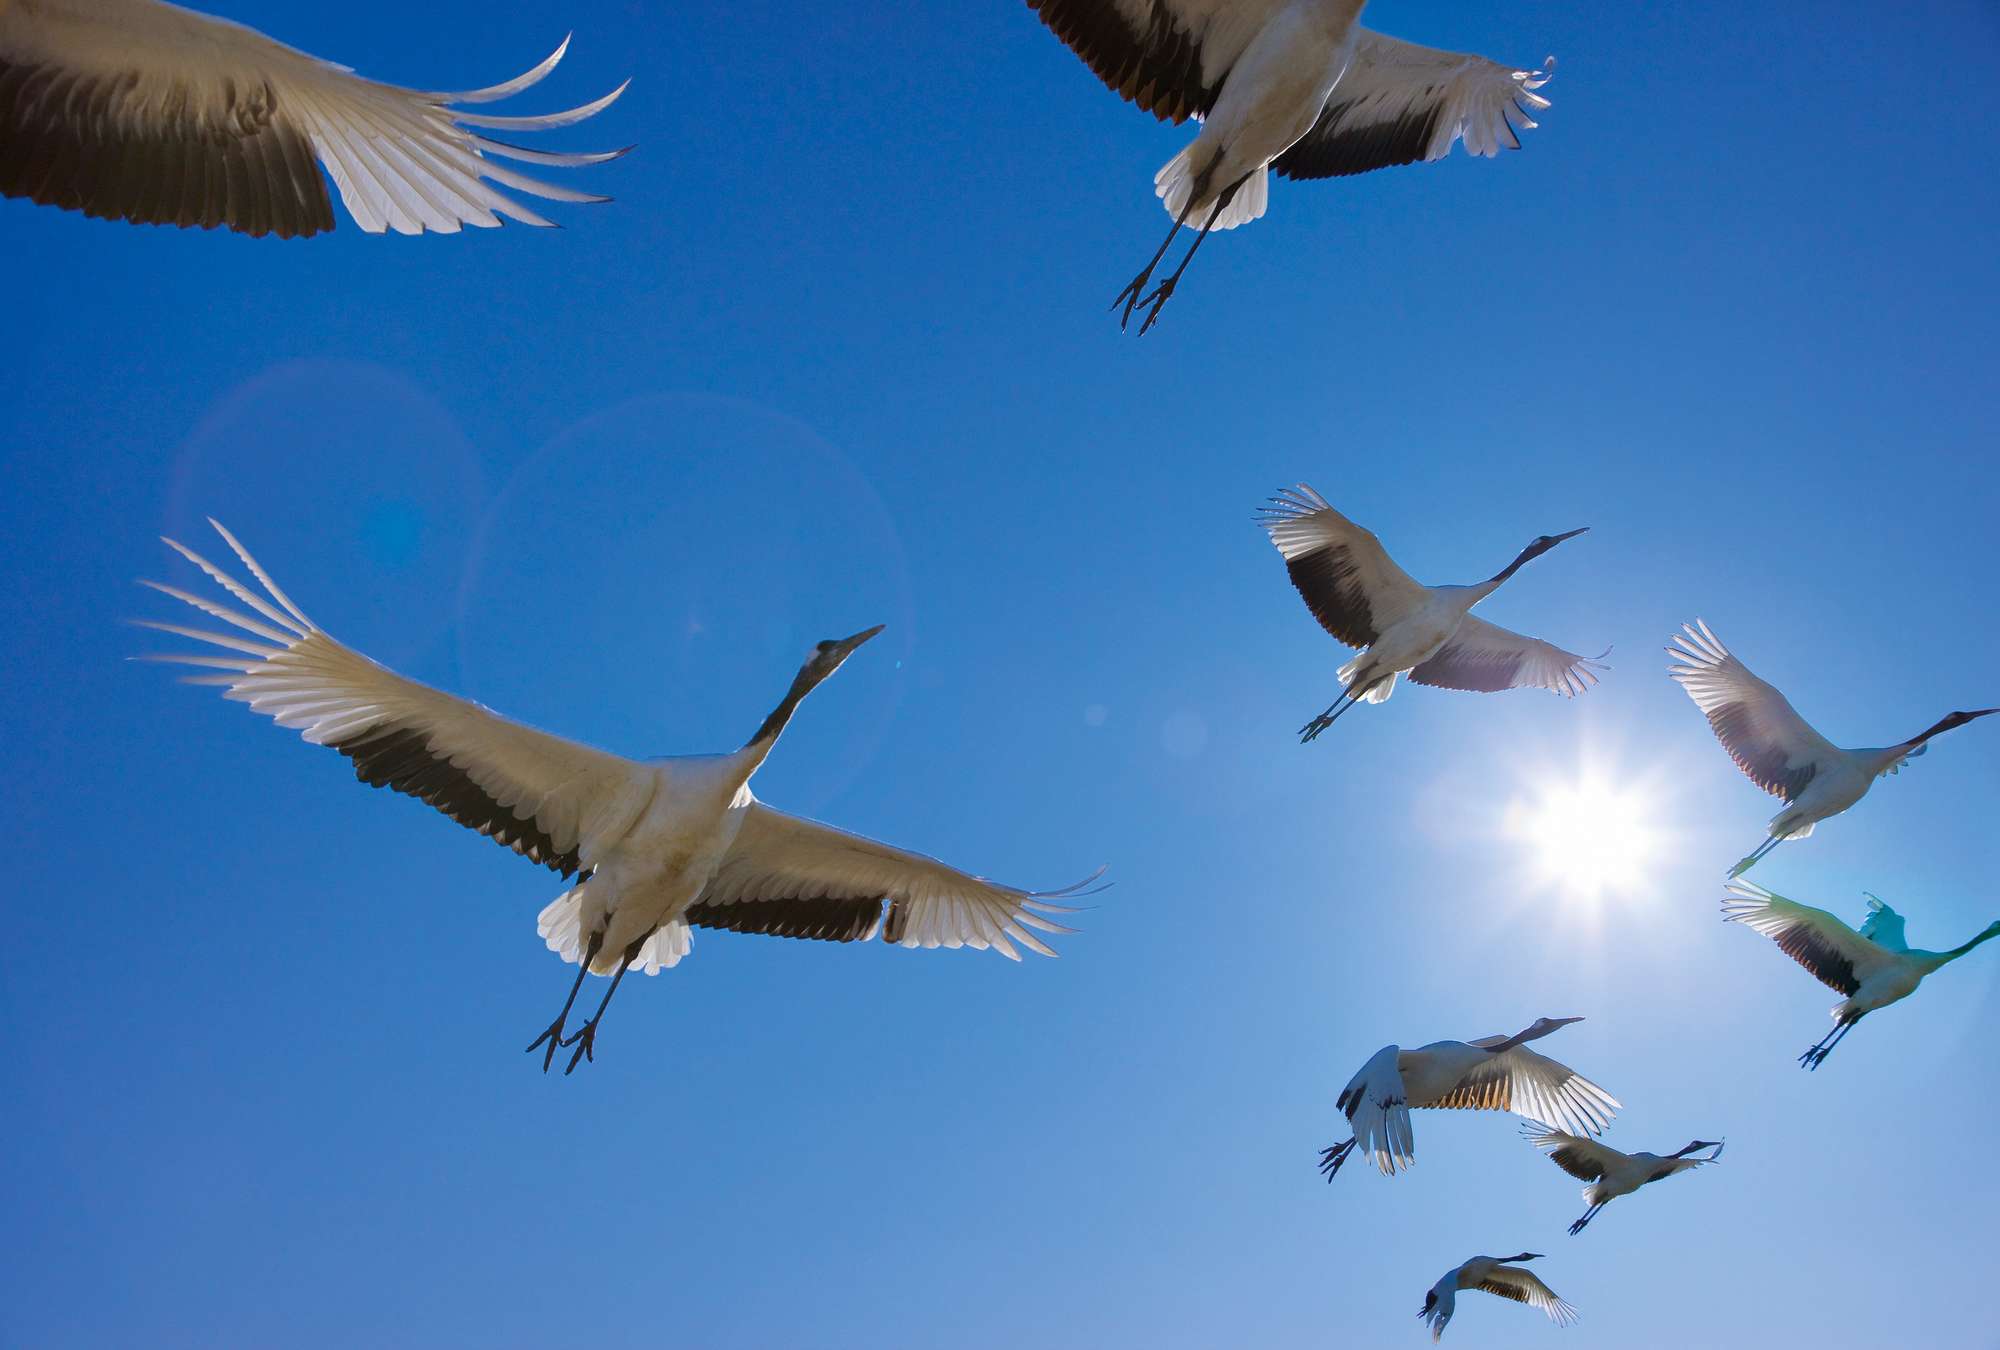             Vogelschwarm – Fototapete mit Zugvögeln & blauem Himmel
        